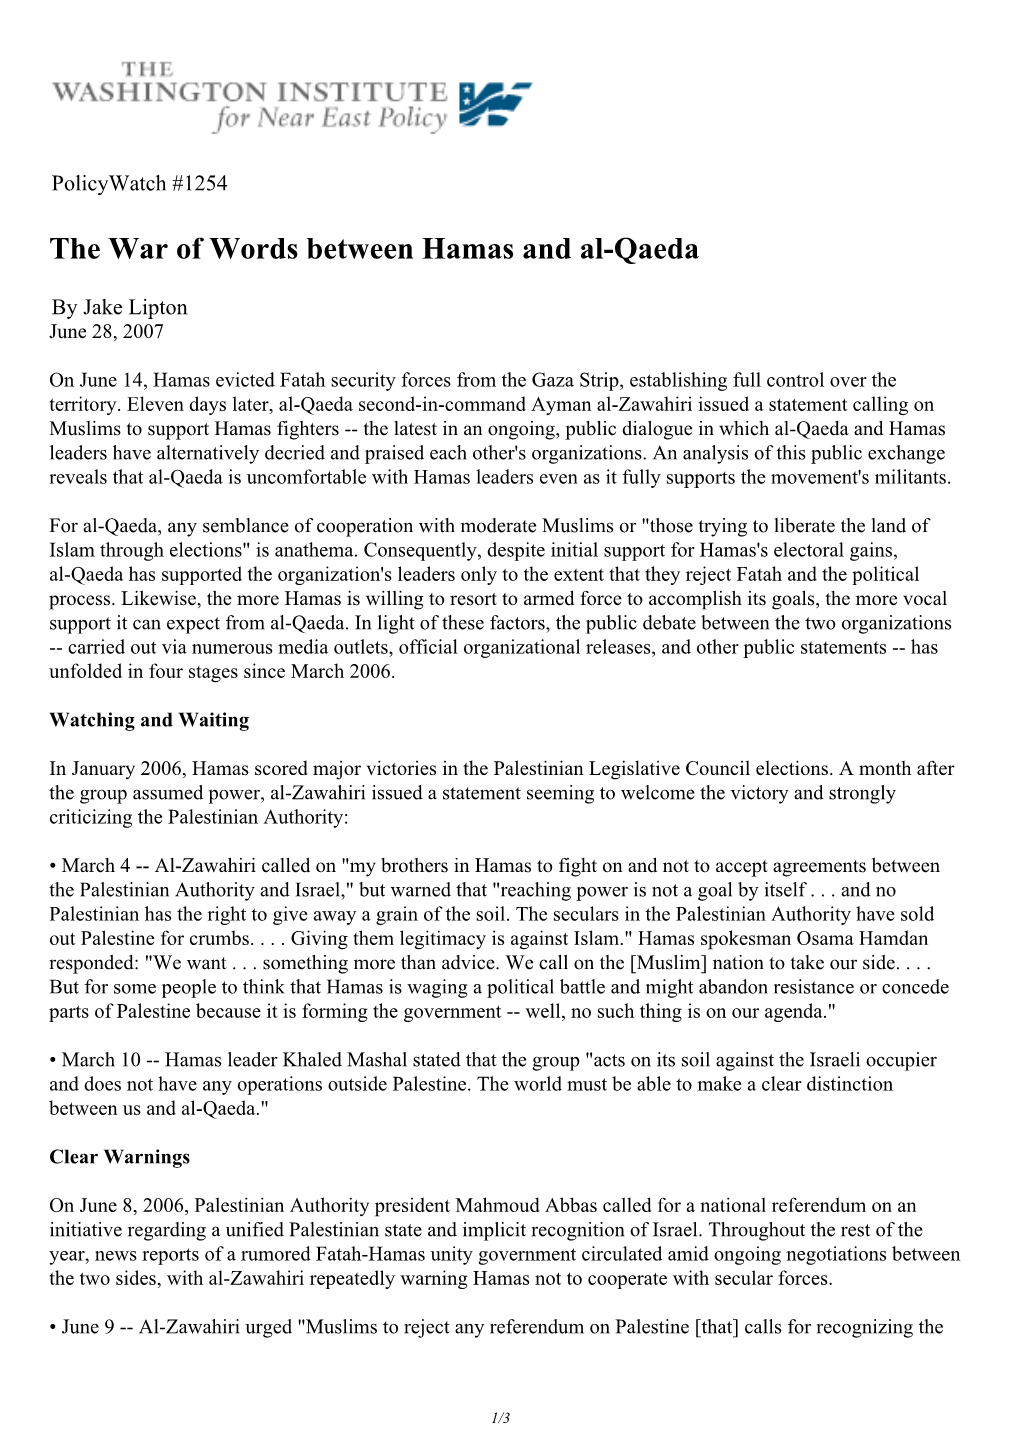 The War of Words Between Hamas and Al-Qaeda